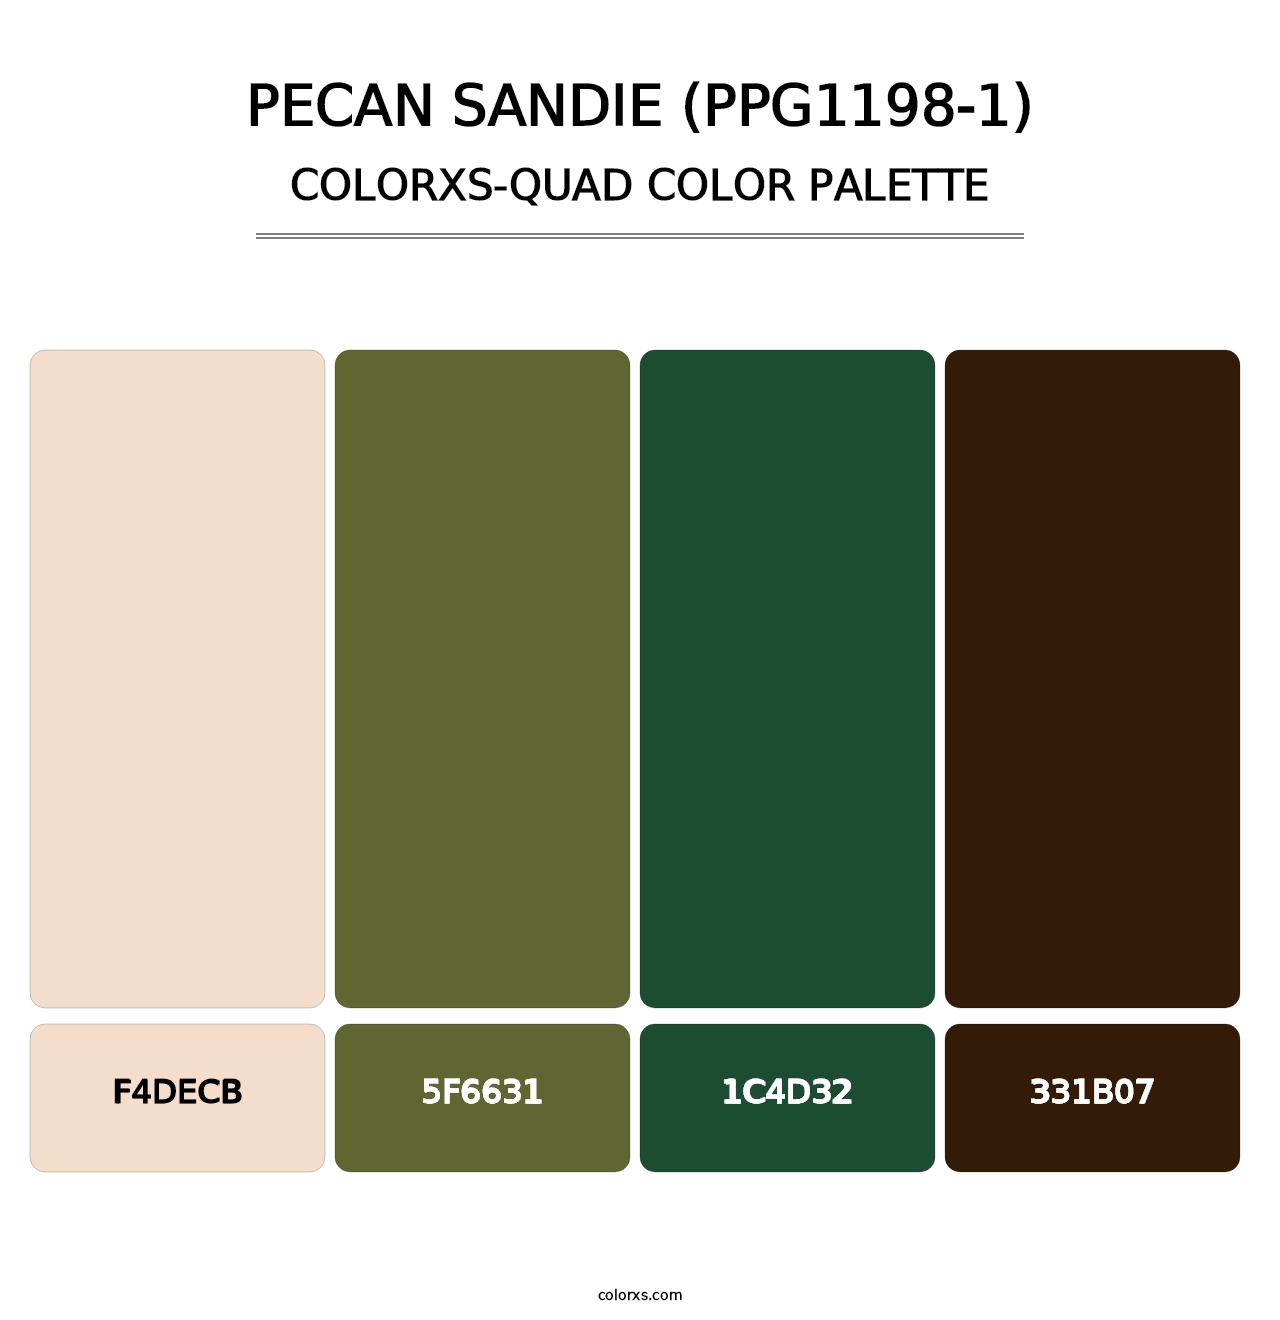 Pecan Sandie (PPG1198-1) - Colorxs Quad Palette